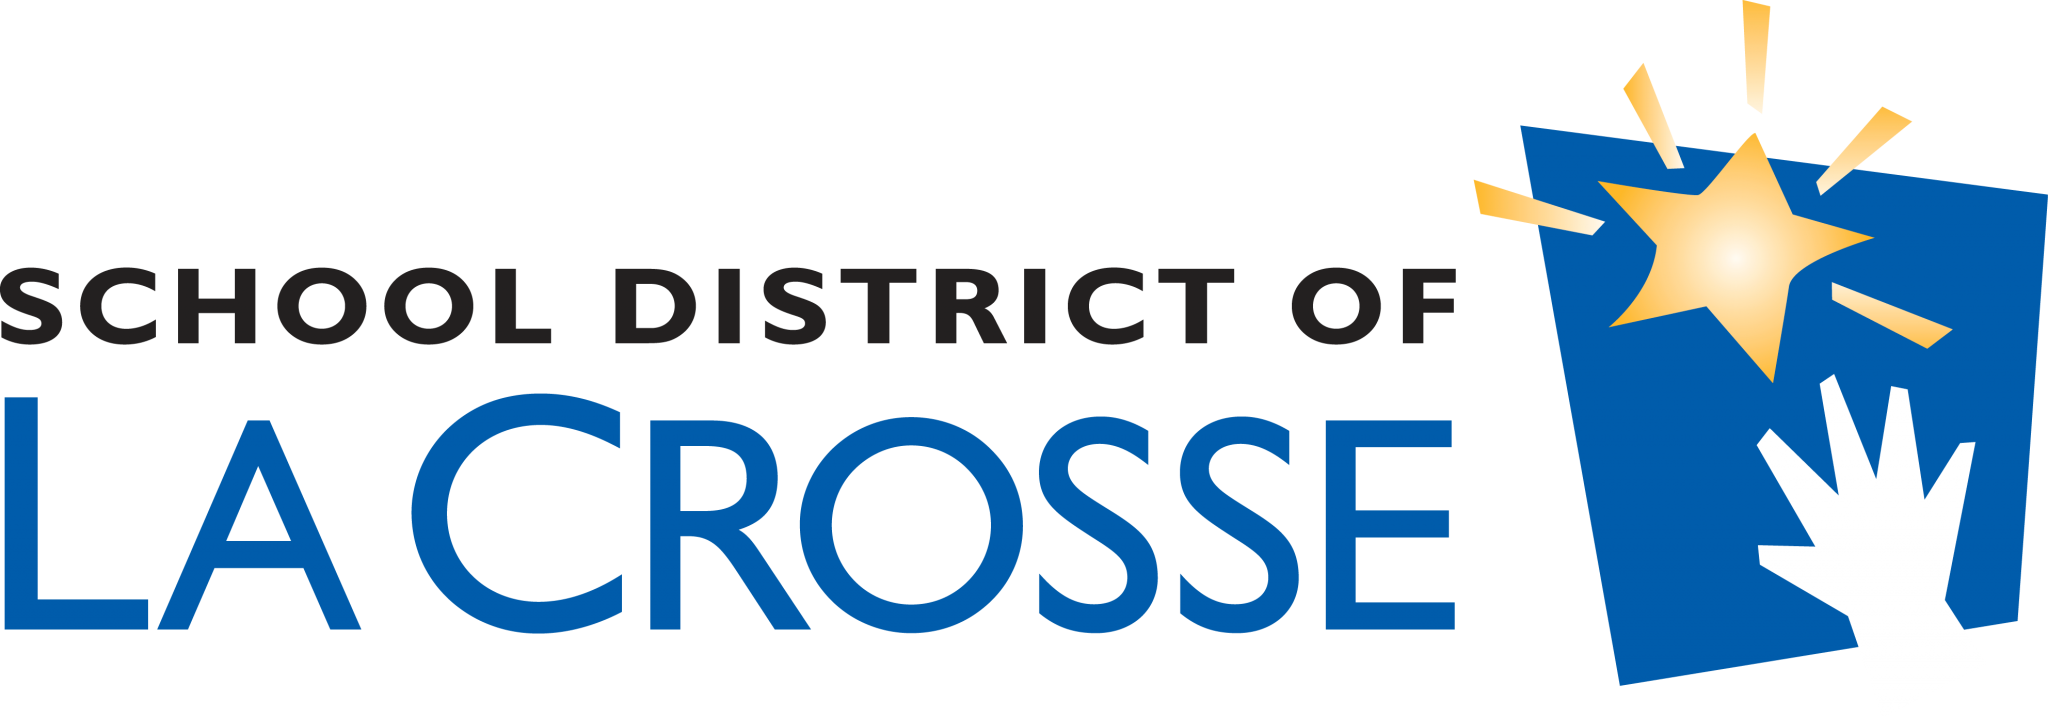 School District of La Crosse logo